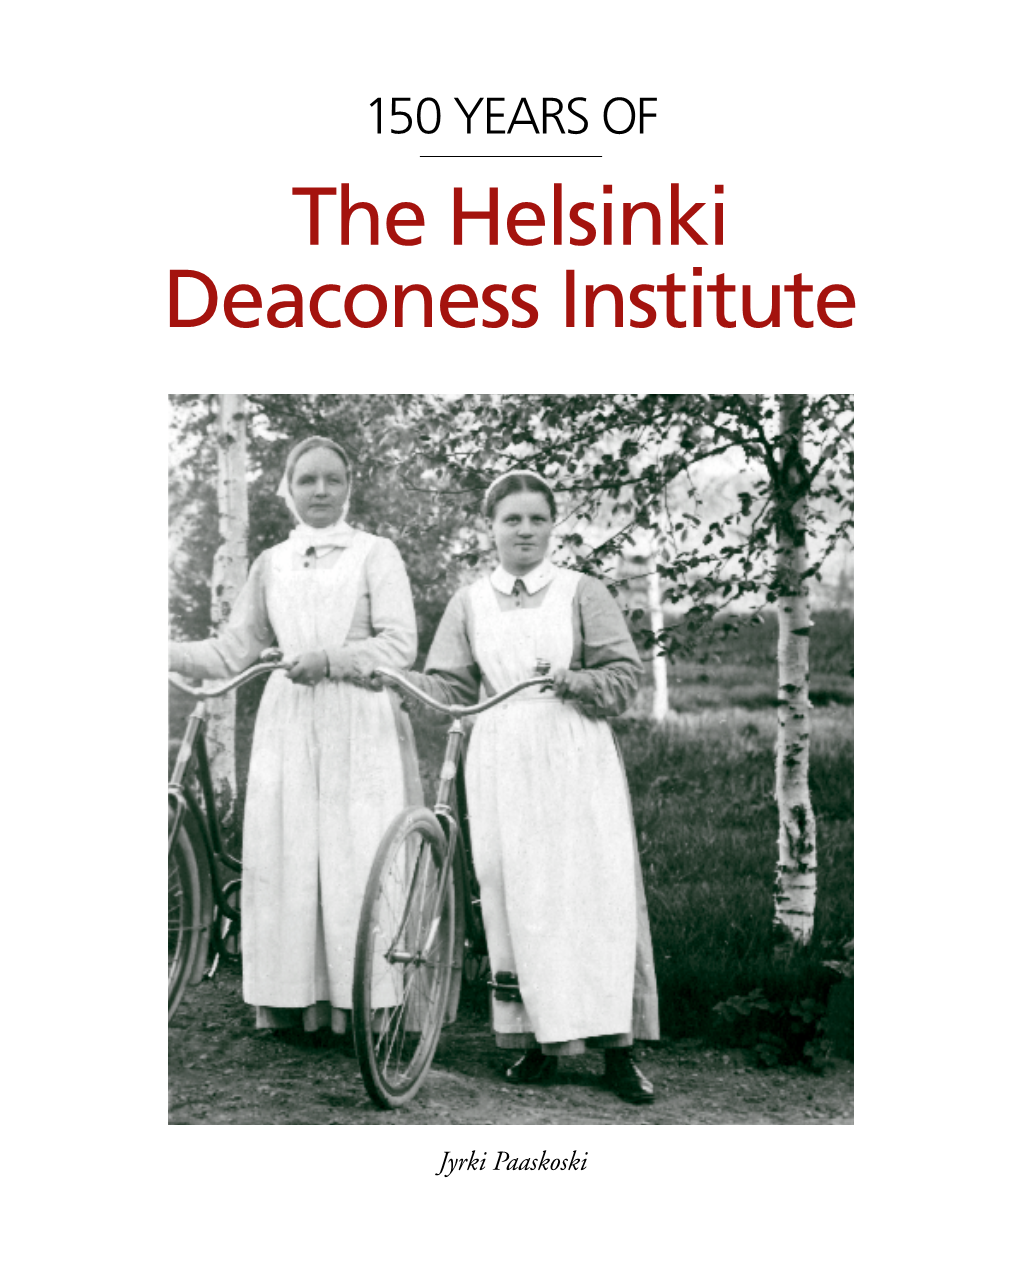 The Helsinki Deaconess Institute